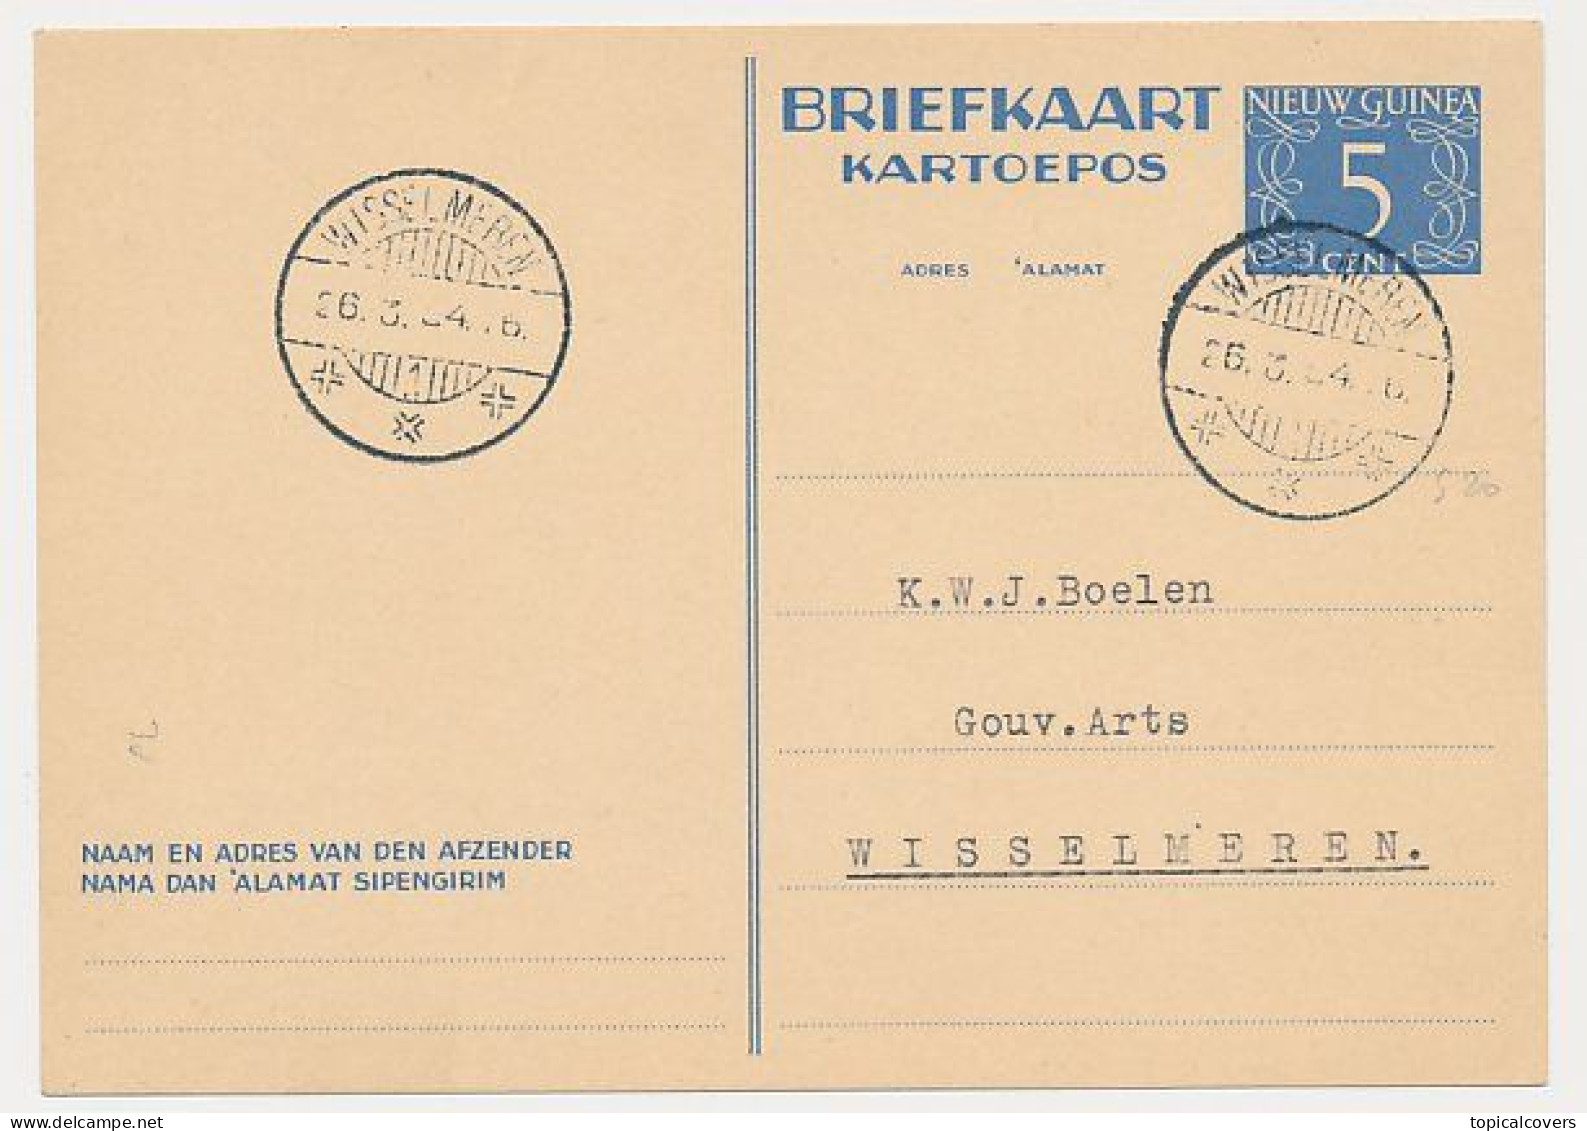 Nederlands Nieuw Guinea / NNG - Briefkaart G. 1 Wisselmeren 1954 - Netherlands New Guinea